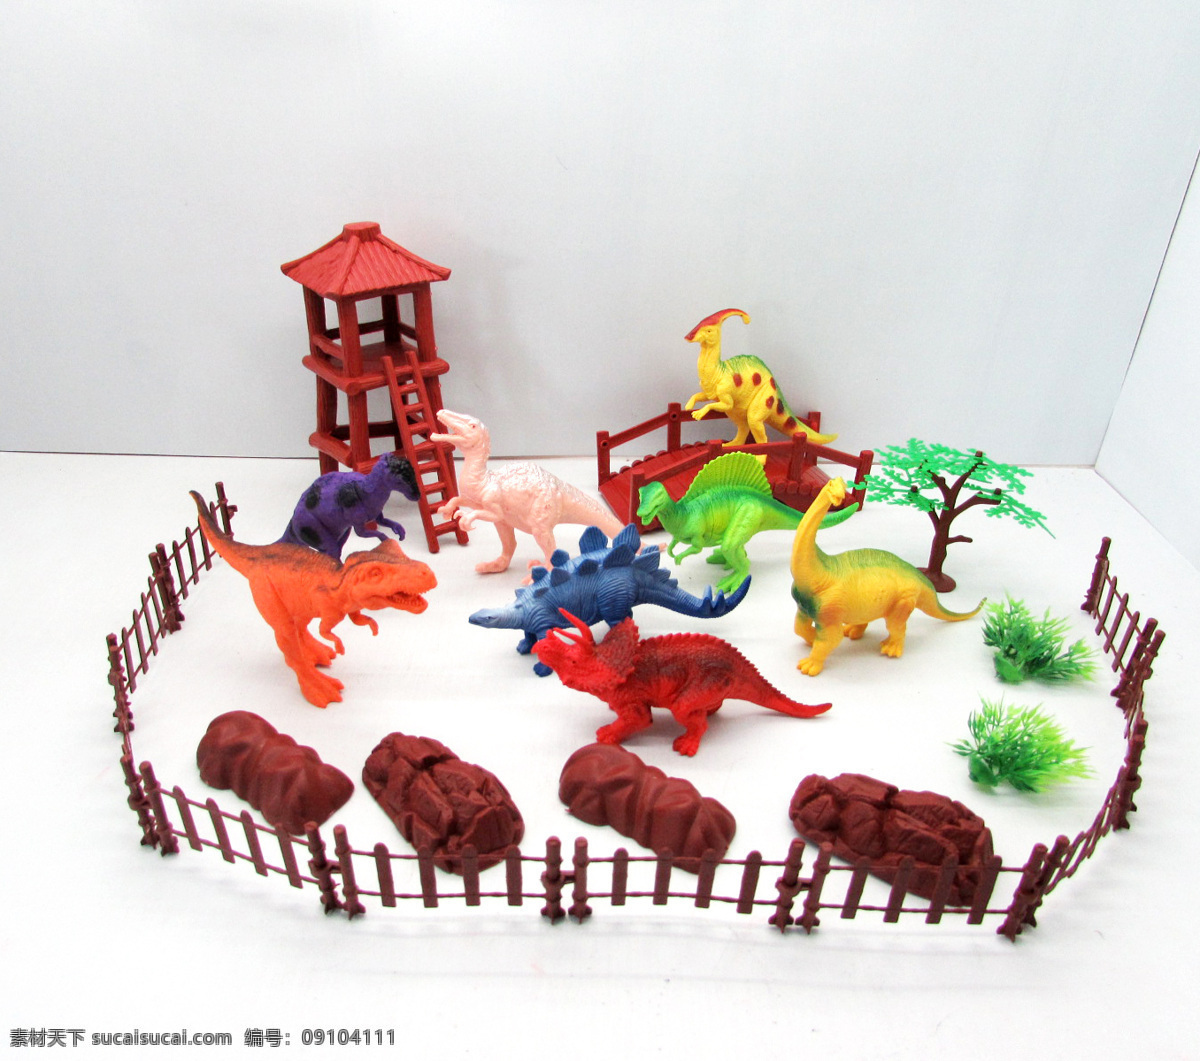 生活百科 娱乐休闲 恐龙 乐园 恐龙乐园 恐龙套装 软胶恐龙 搪塑玩具 搪胶 恐龙玩具 psd源文件